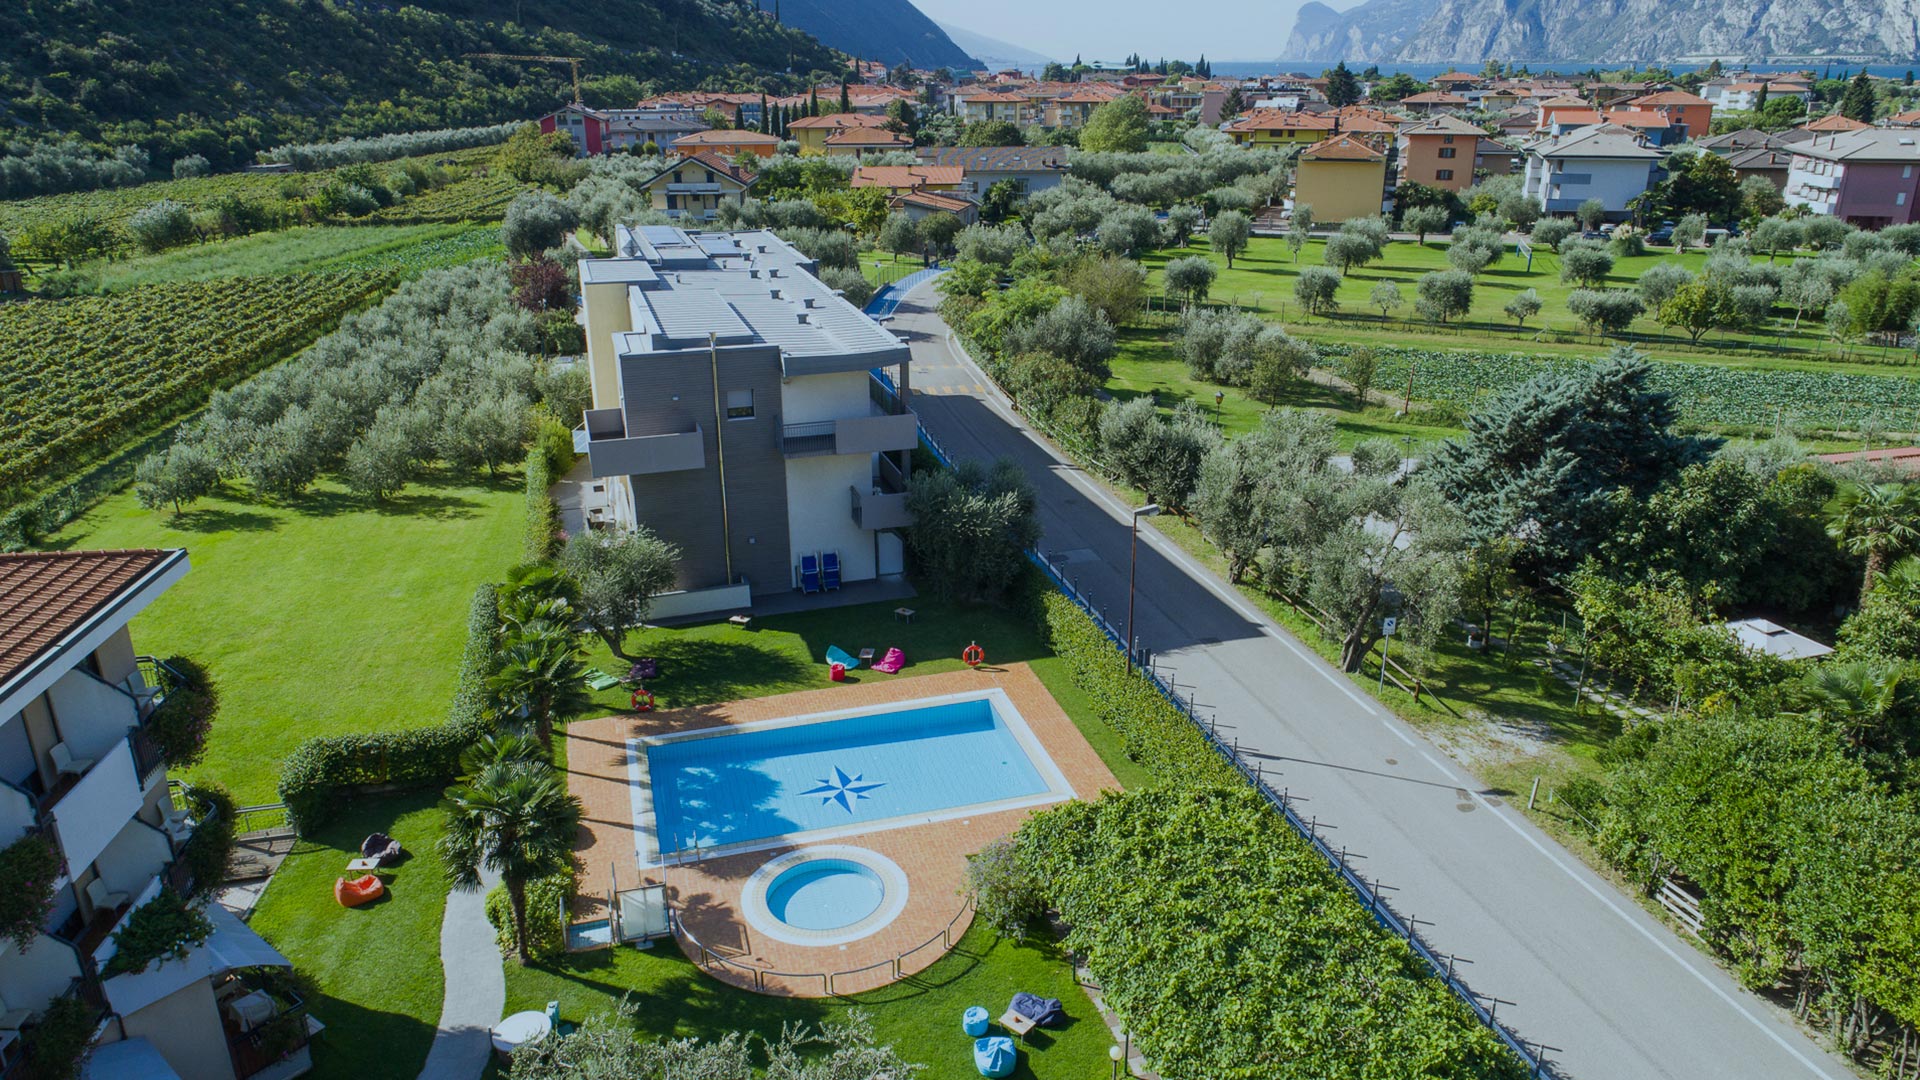 Villa Stella | 3 Sterne Superior Hotel in Torbole, am Gardasee im Trentino